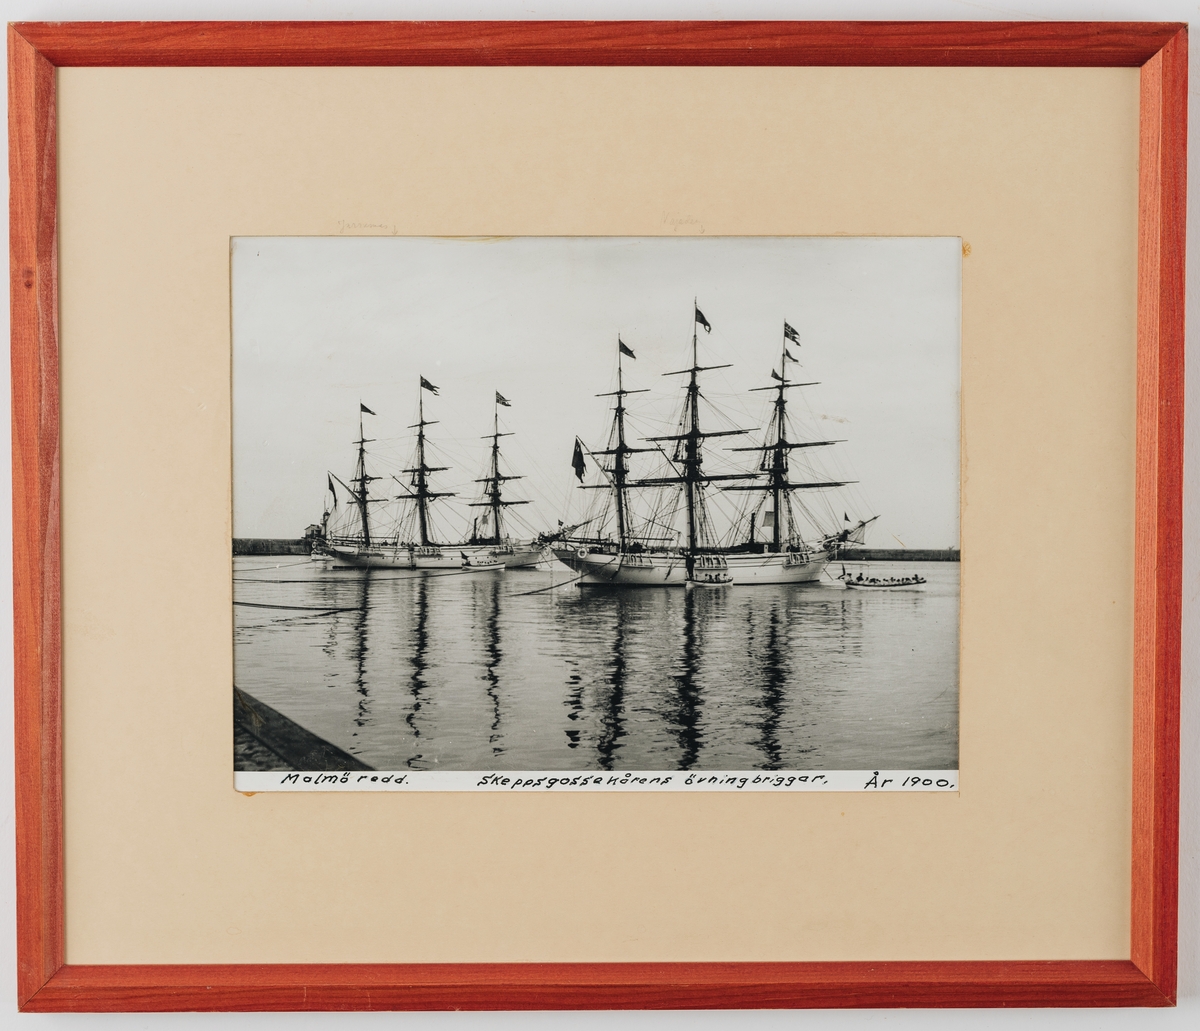 Tvåkanoners övningsskepp byggt 1897 i trä på stålspant, med inredning för avdelningschefen. Tillsammans med systerskeppet Jarramas (1900) världens minsta örlogsfartyg med fregattrigg.